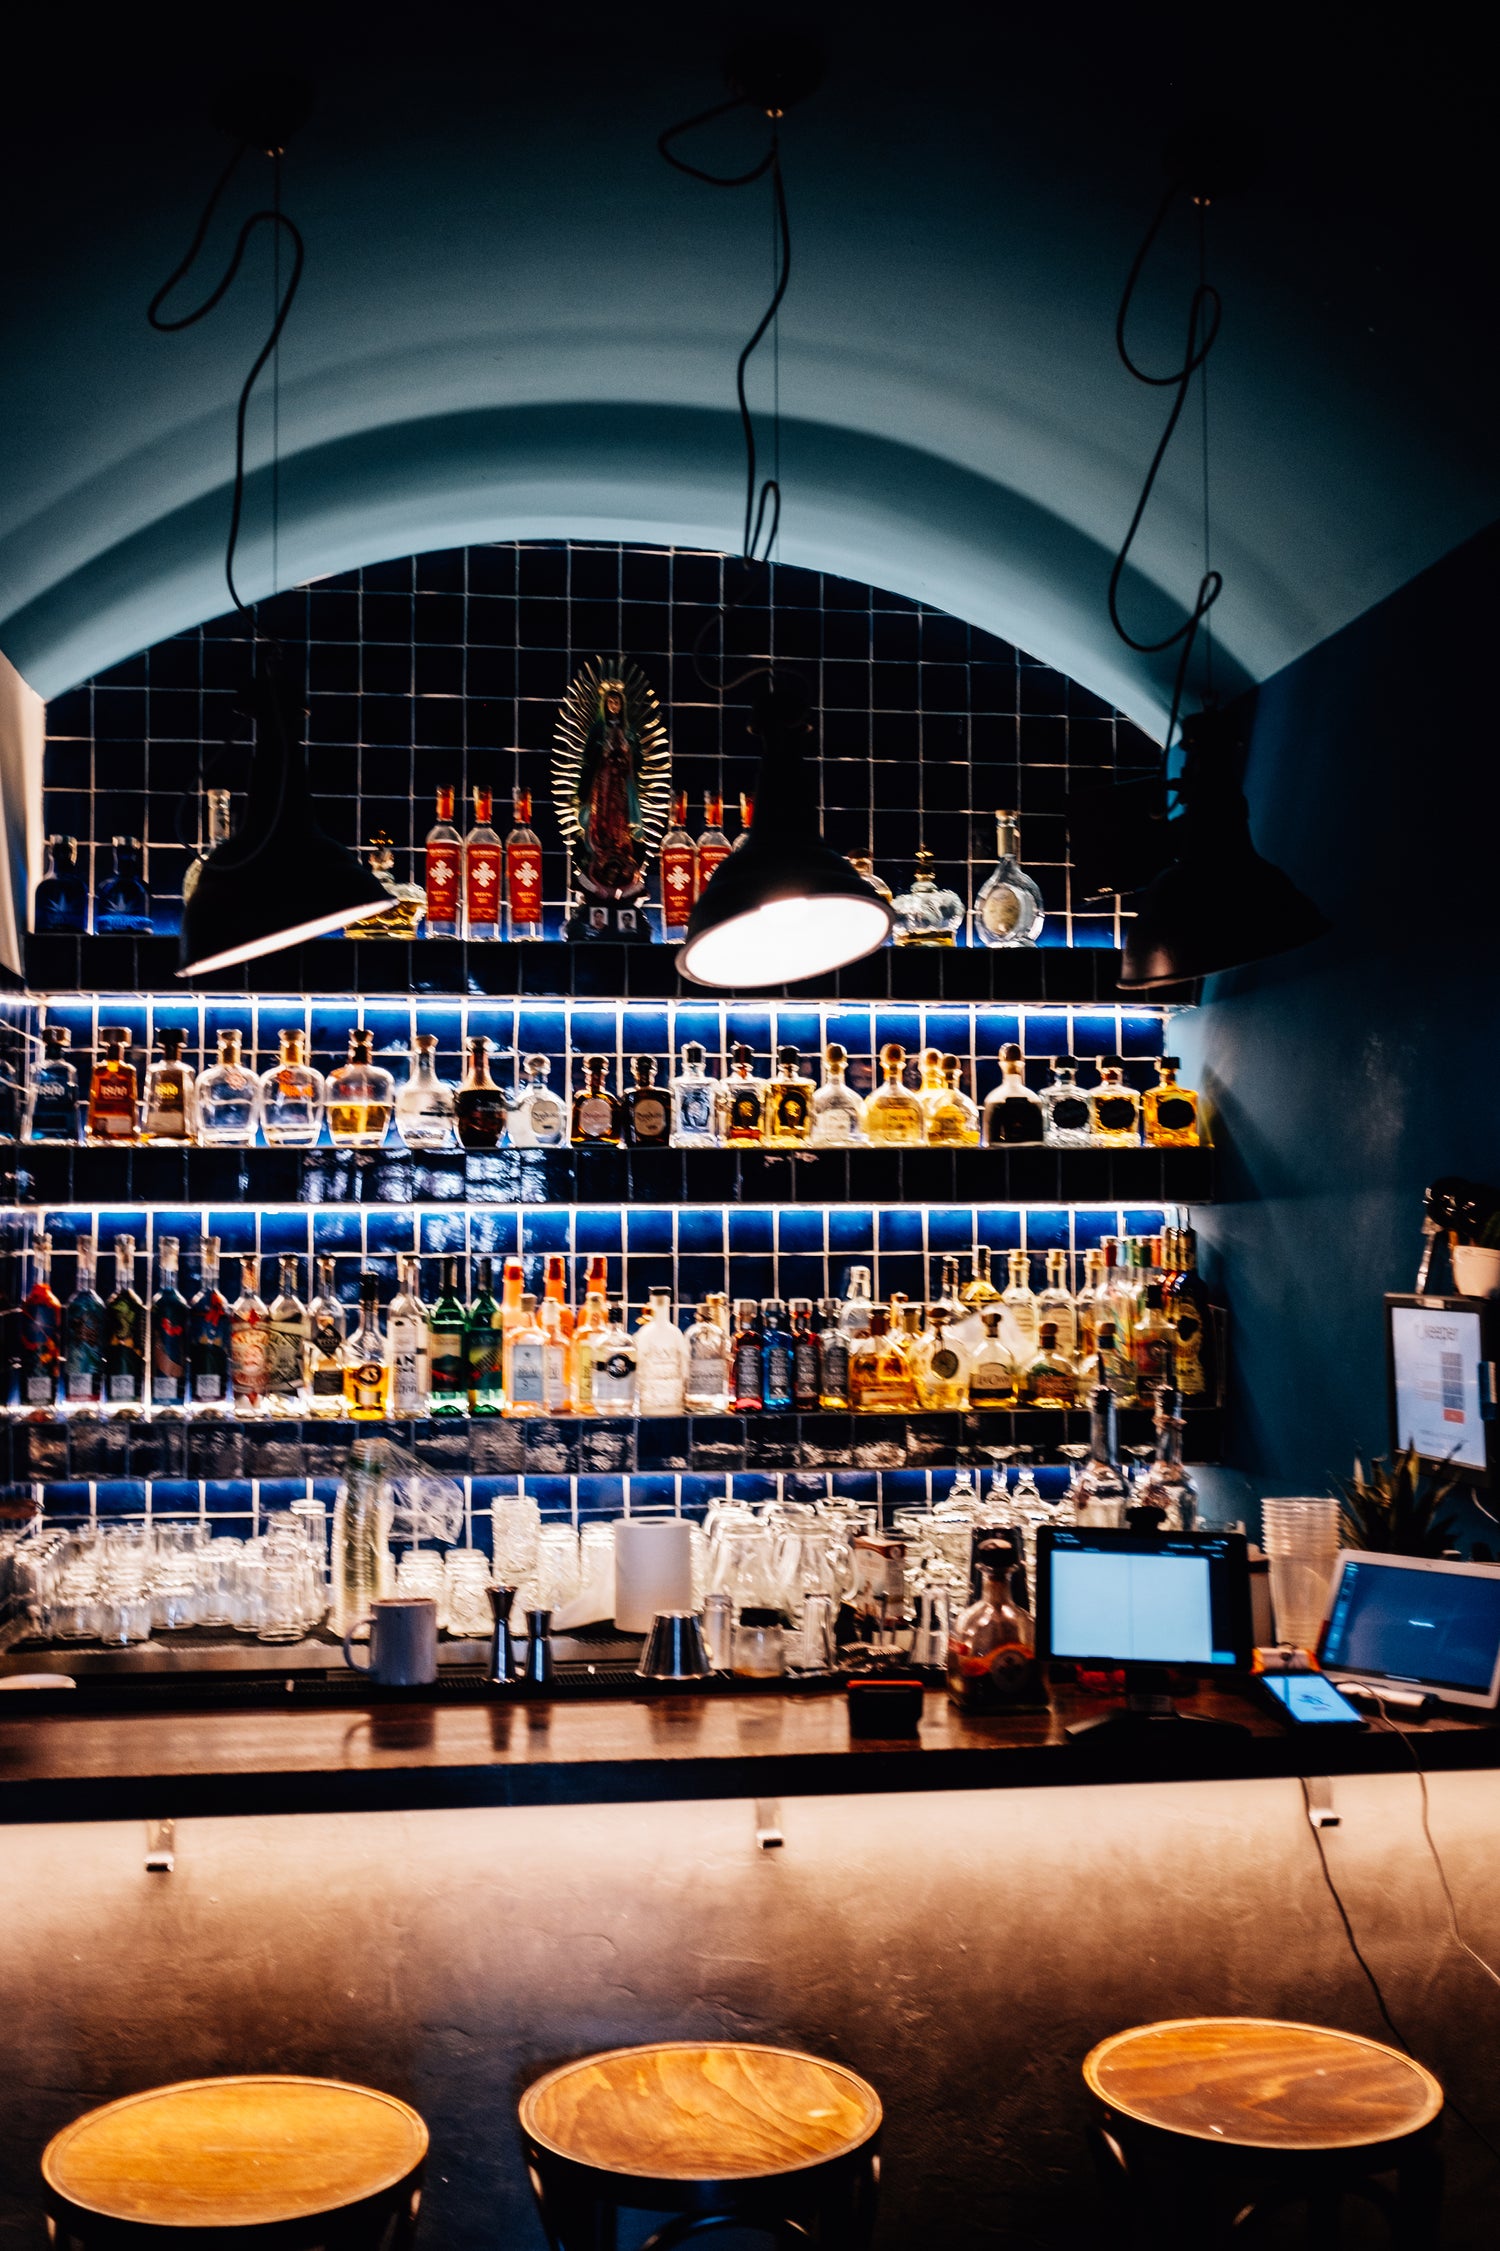 Backlit bar with alcohol bottles lined up on shelves